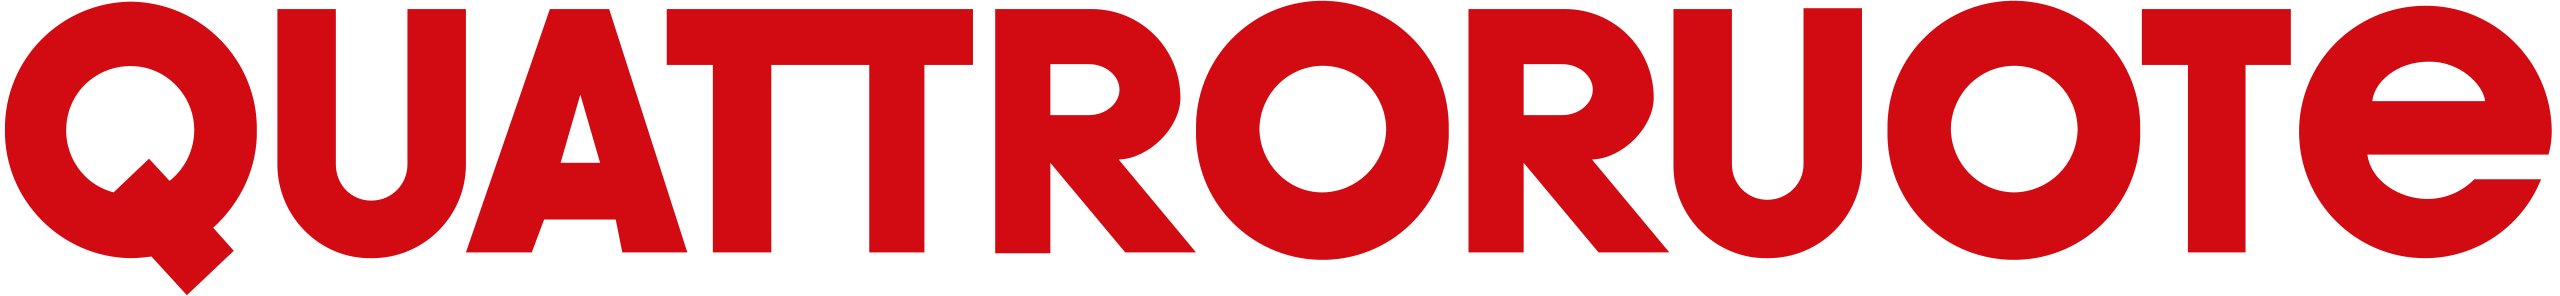 Quattroruote-logo